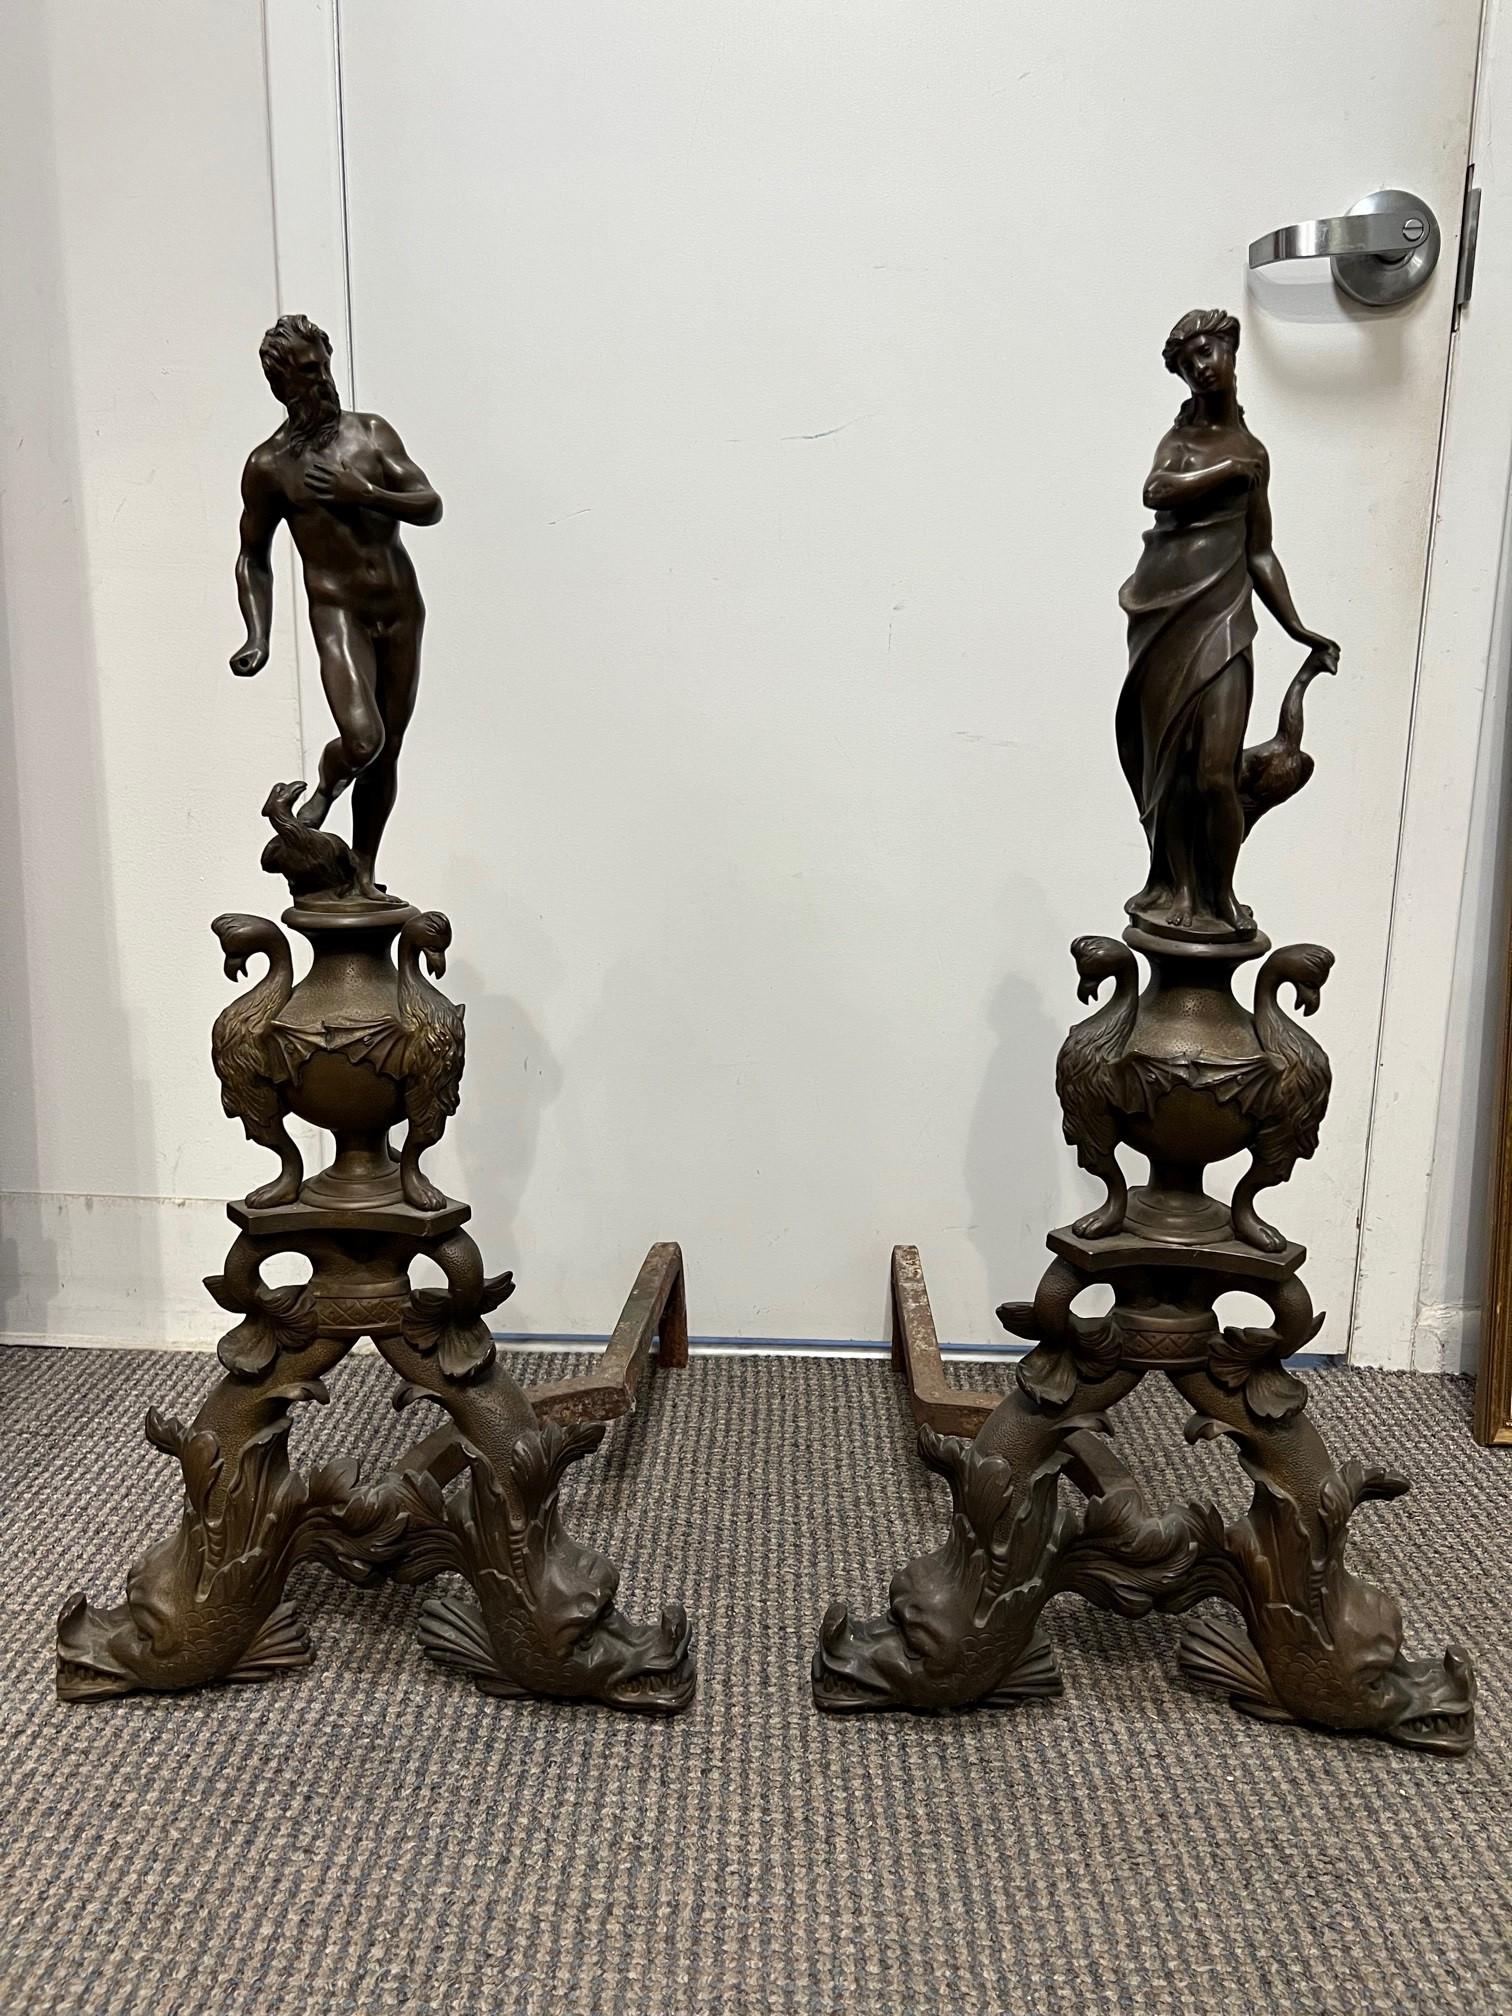 Paire de chenets anciens en bronze représentant un homme et une femme, provenant de Paris France. Il s'agit d'une impressionnante paire de chenets avec un dauphin comme base, tenant une urne avec trois griffons ailés, des oiseaux peut-être des